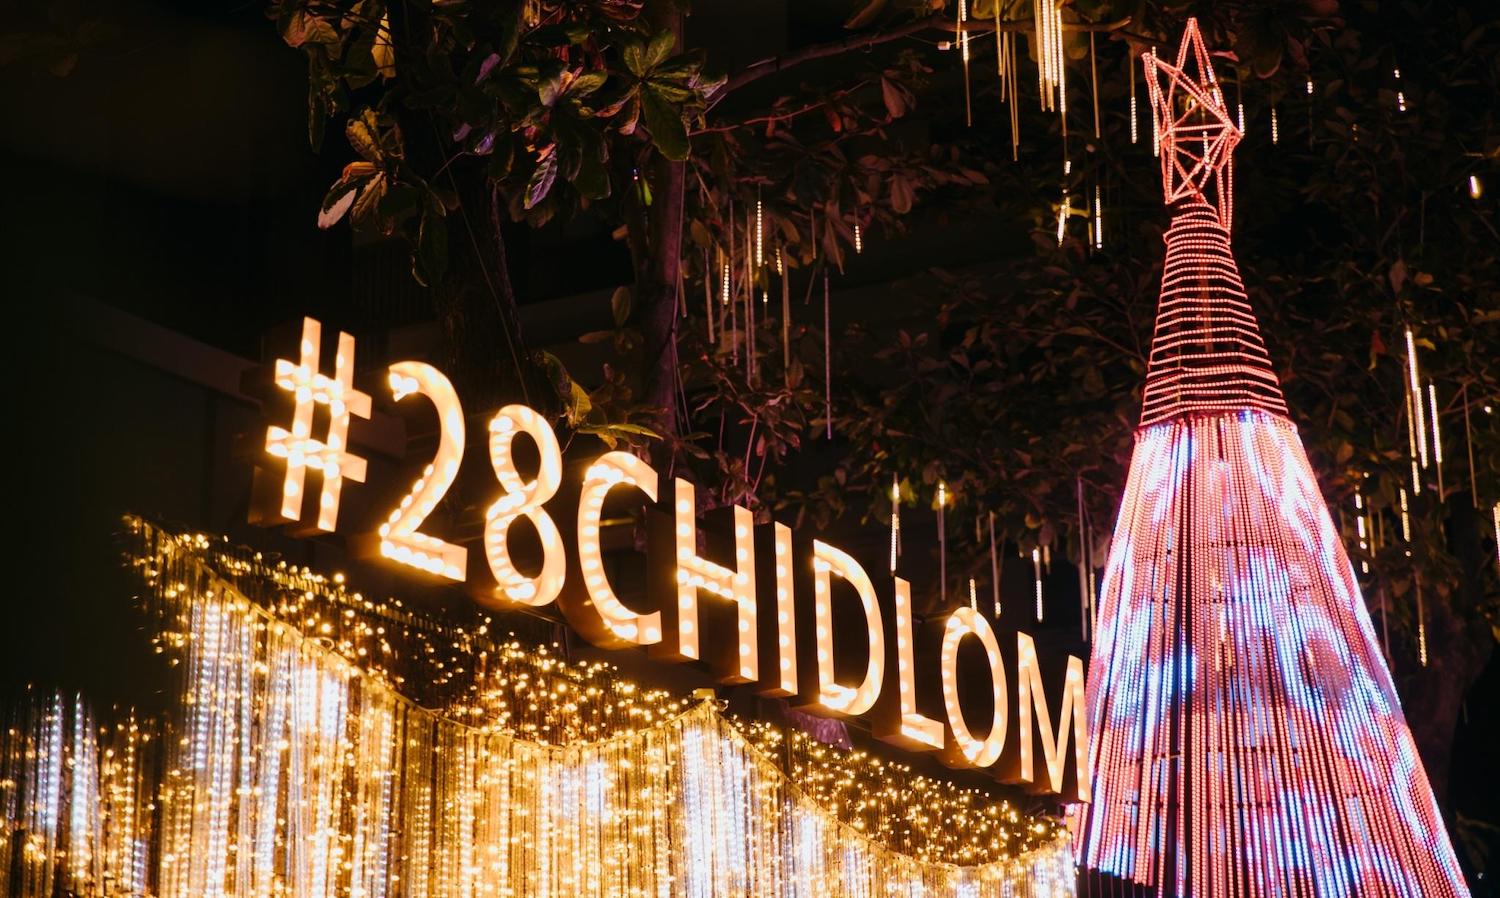 28 Wishes at 28 Chidlom by SC Asset หนึ่งเดียวใจกลางย่านชิดลม ต้นคริสมาสต์แห่งพร 28 ประการ